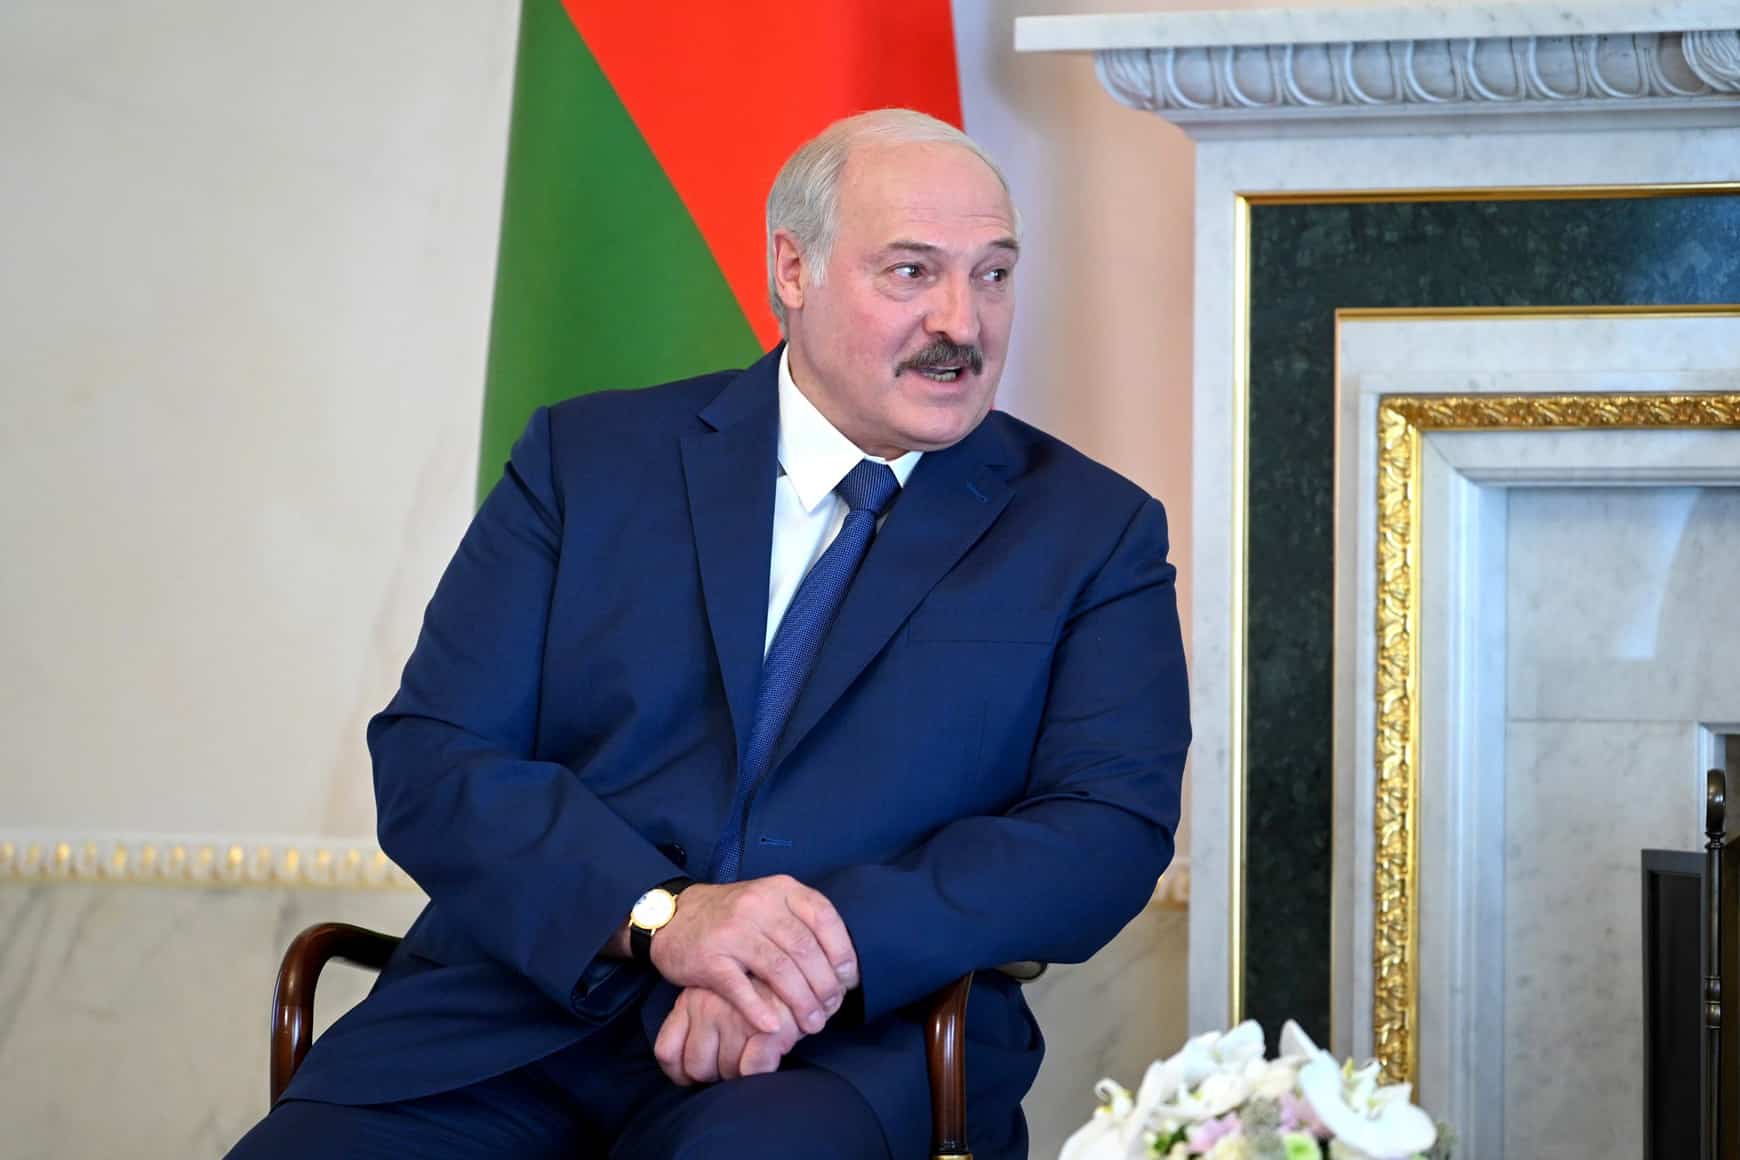 El presidente de Bielorrusia, Aleksander Lukashenko, aferrado al poder tras unas elecciones fraudulentas en agosto de 2020